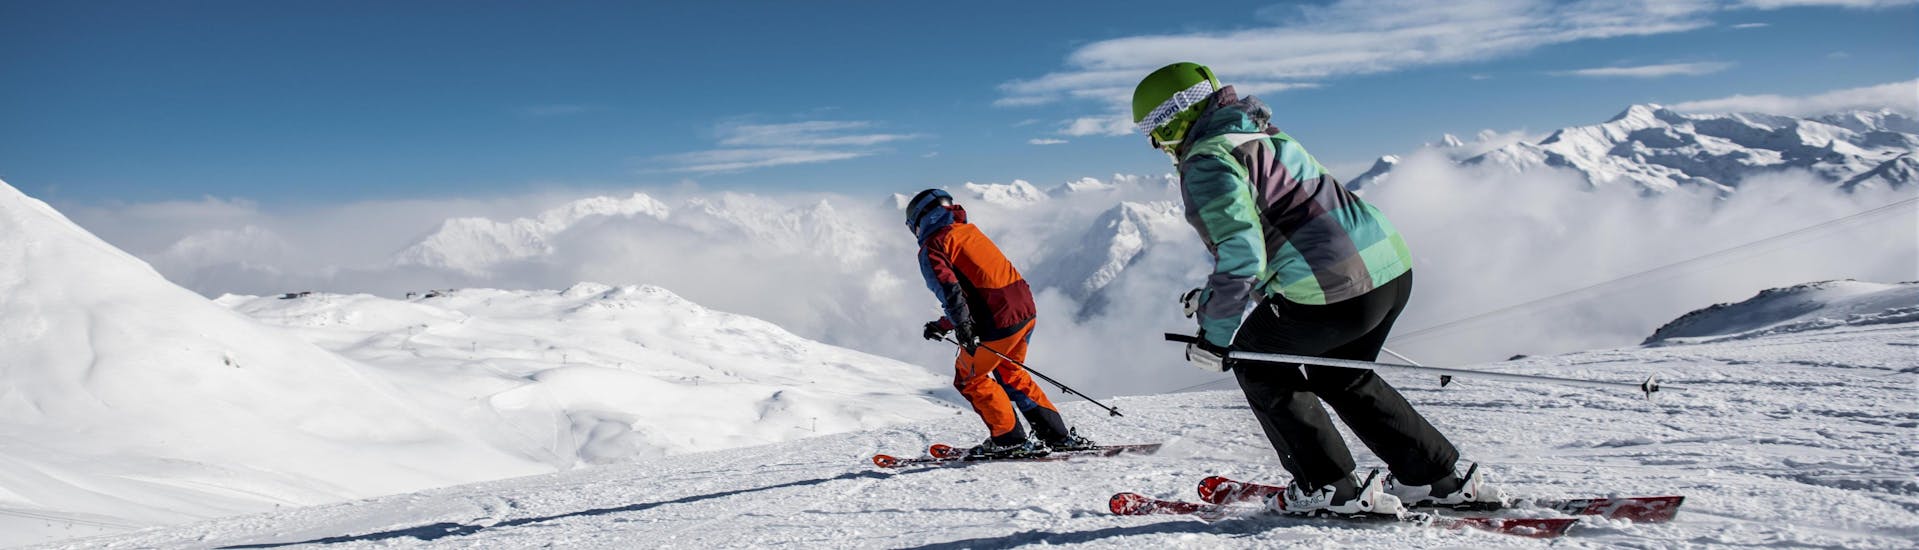 Deux skieurs dévalent une piste fraîchement damée dans la station de ski suisse de Klosters, une destination populaire pour réserver des cours de ski auprès d'une des écoles de ski locales.